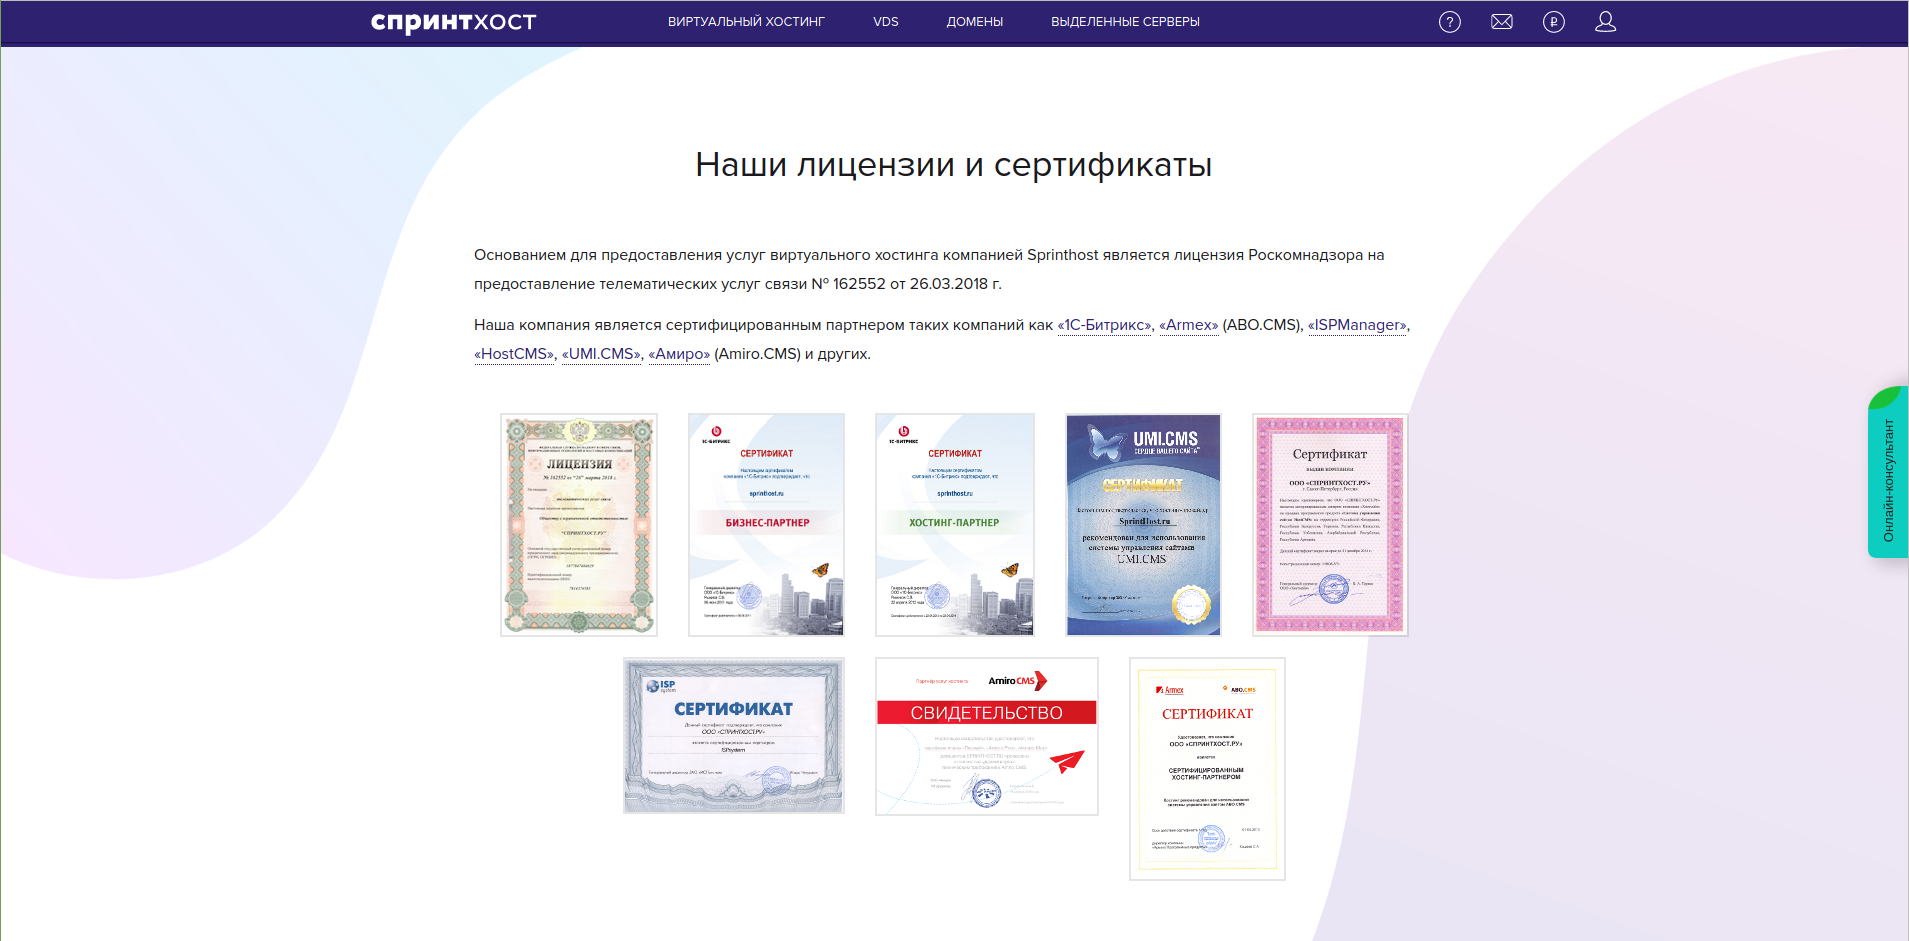 Лицензии и сертификаты хостинга Sprinthost.ru